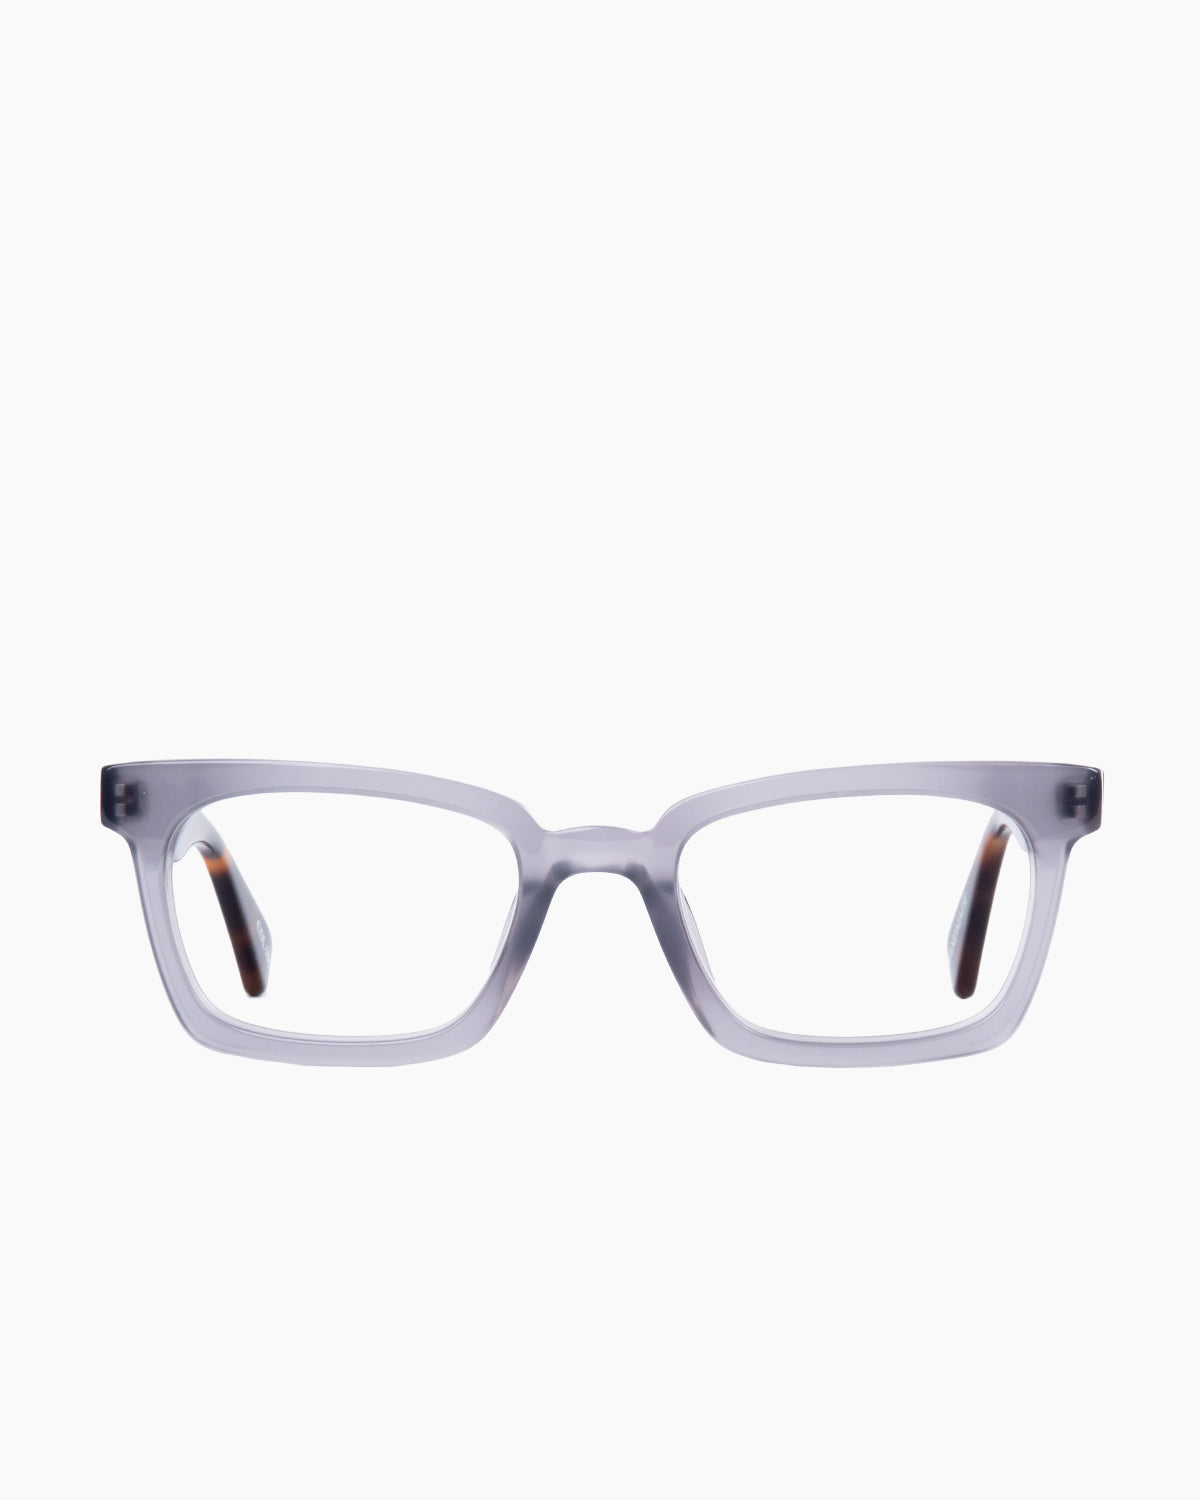 Evolve - Como - 106 | glasses bar:  Marie-Sophie Dion